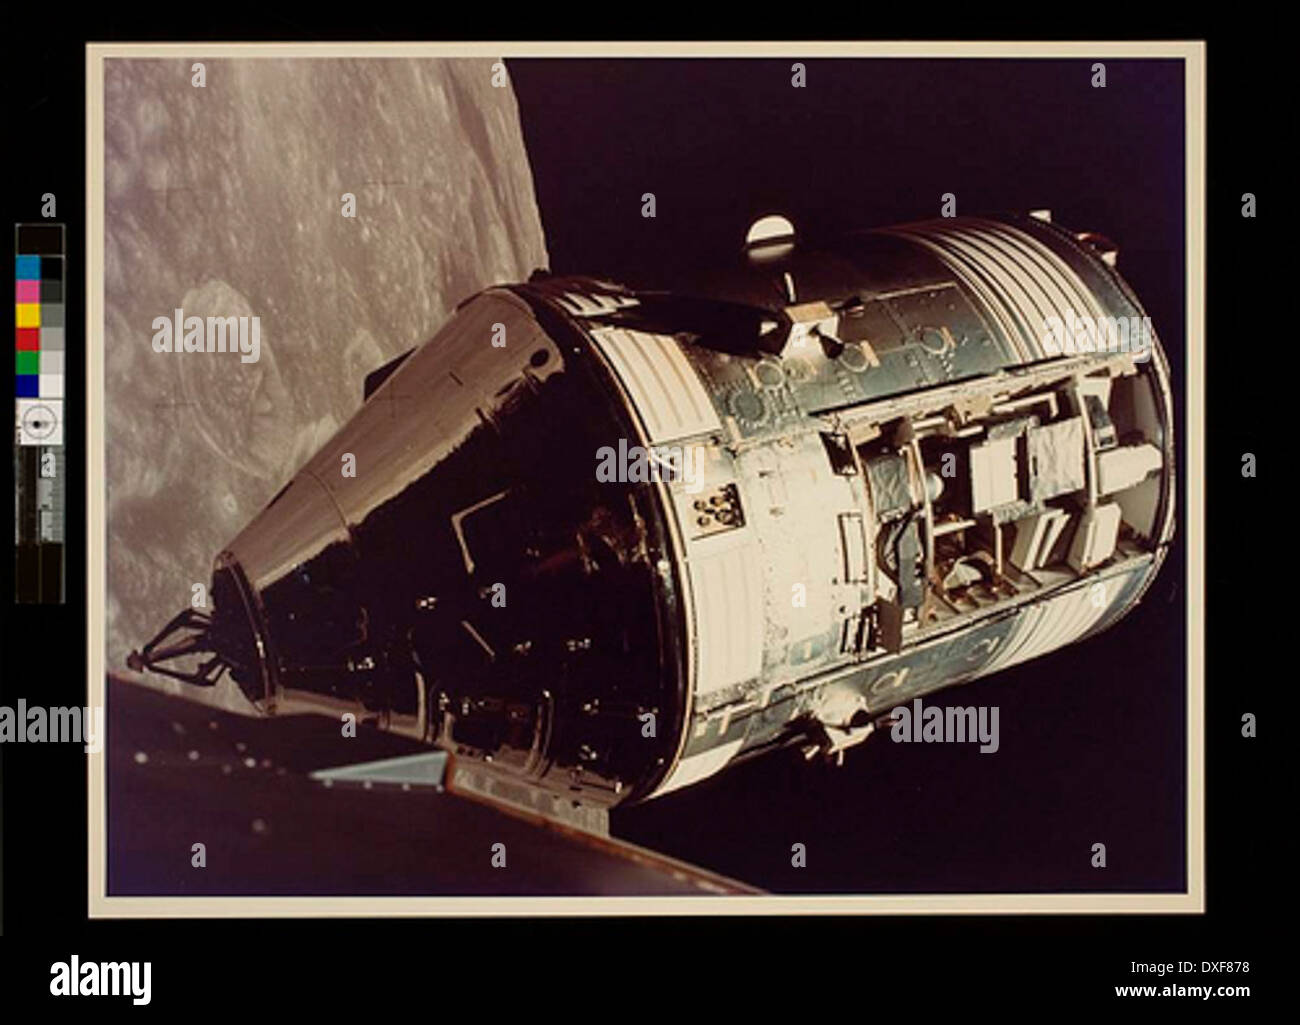 Comando del Apolo 17 módulos de servicio fotografiada desde el módulo lunar en órbita Foto de stock